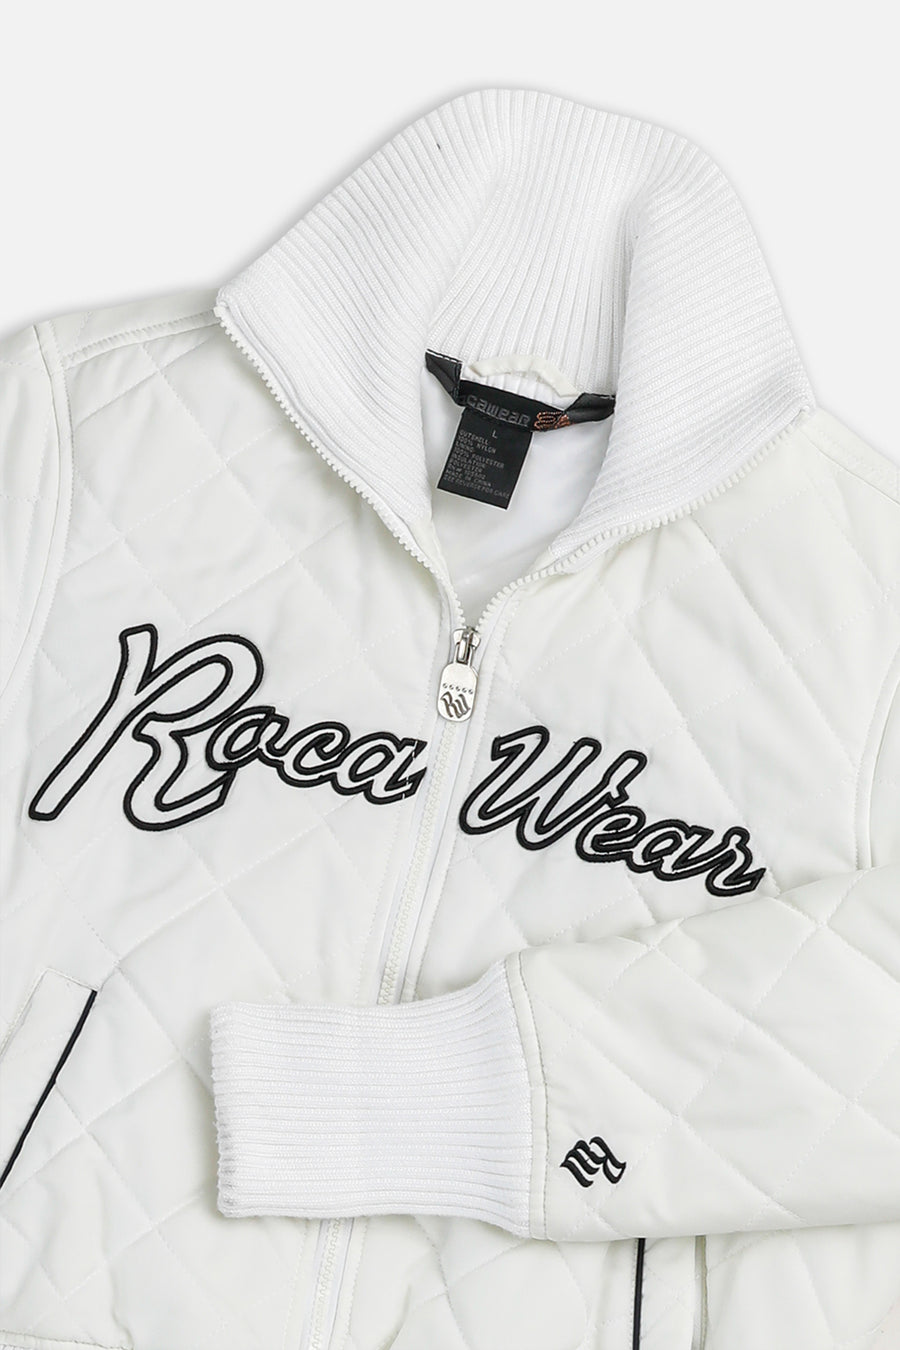 Vintage Rocawear Jacket - Women's L